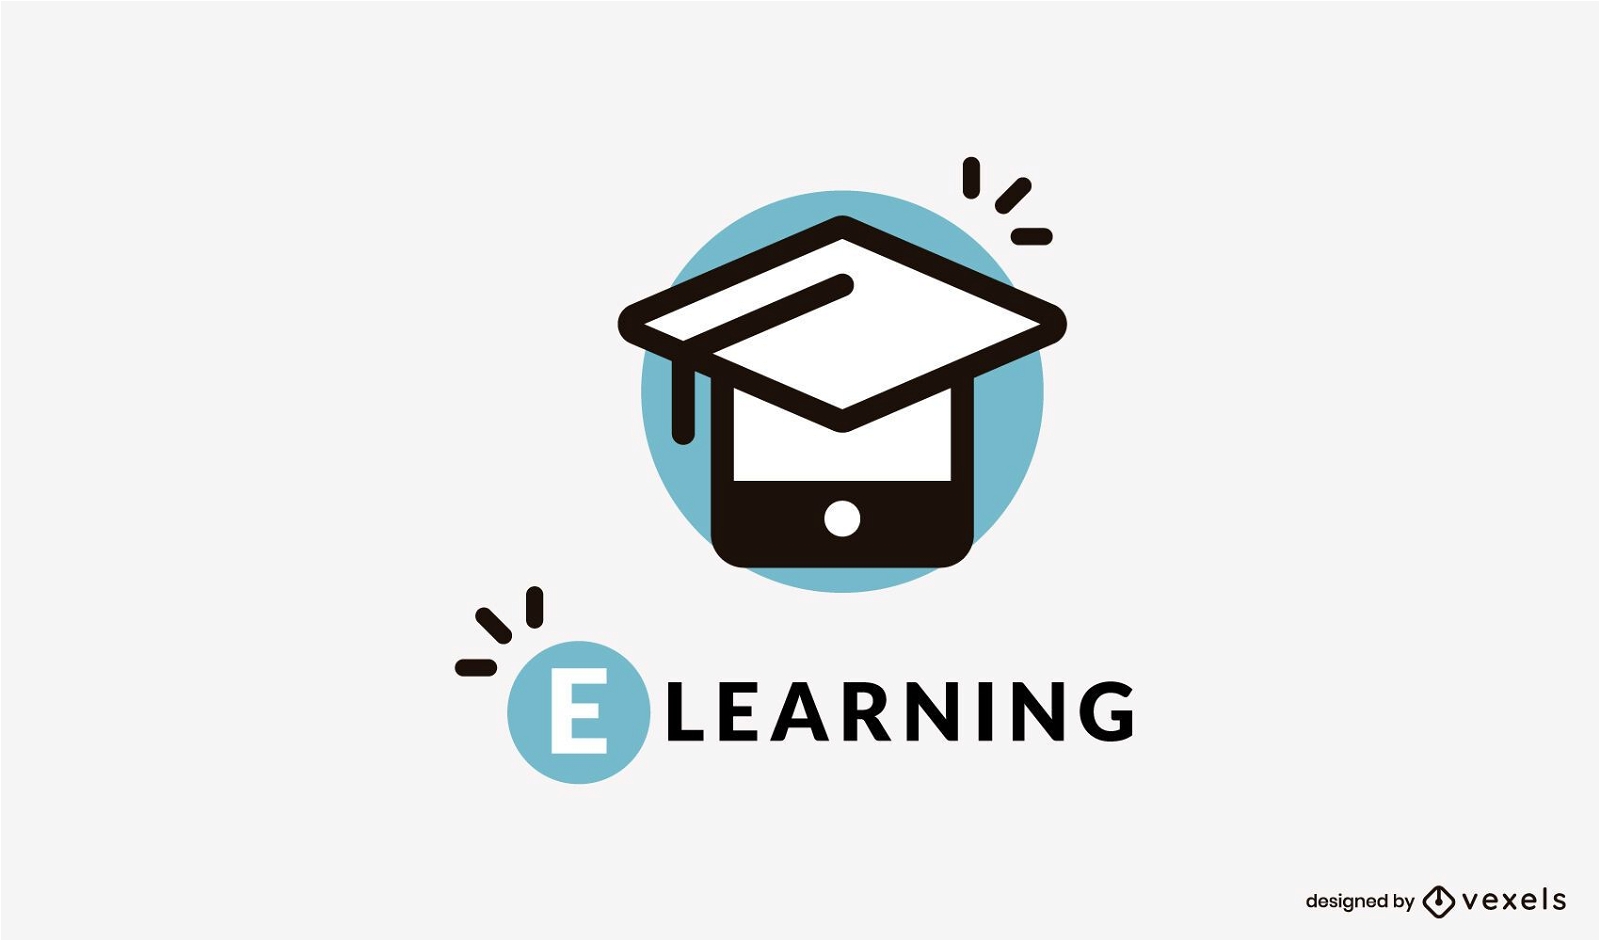 E learning logo design